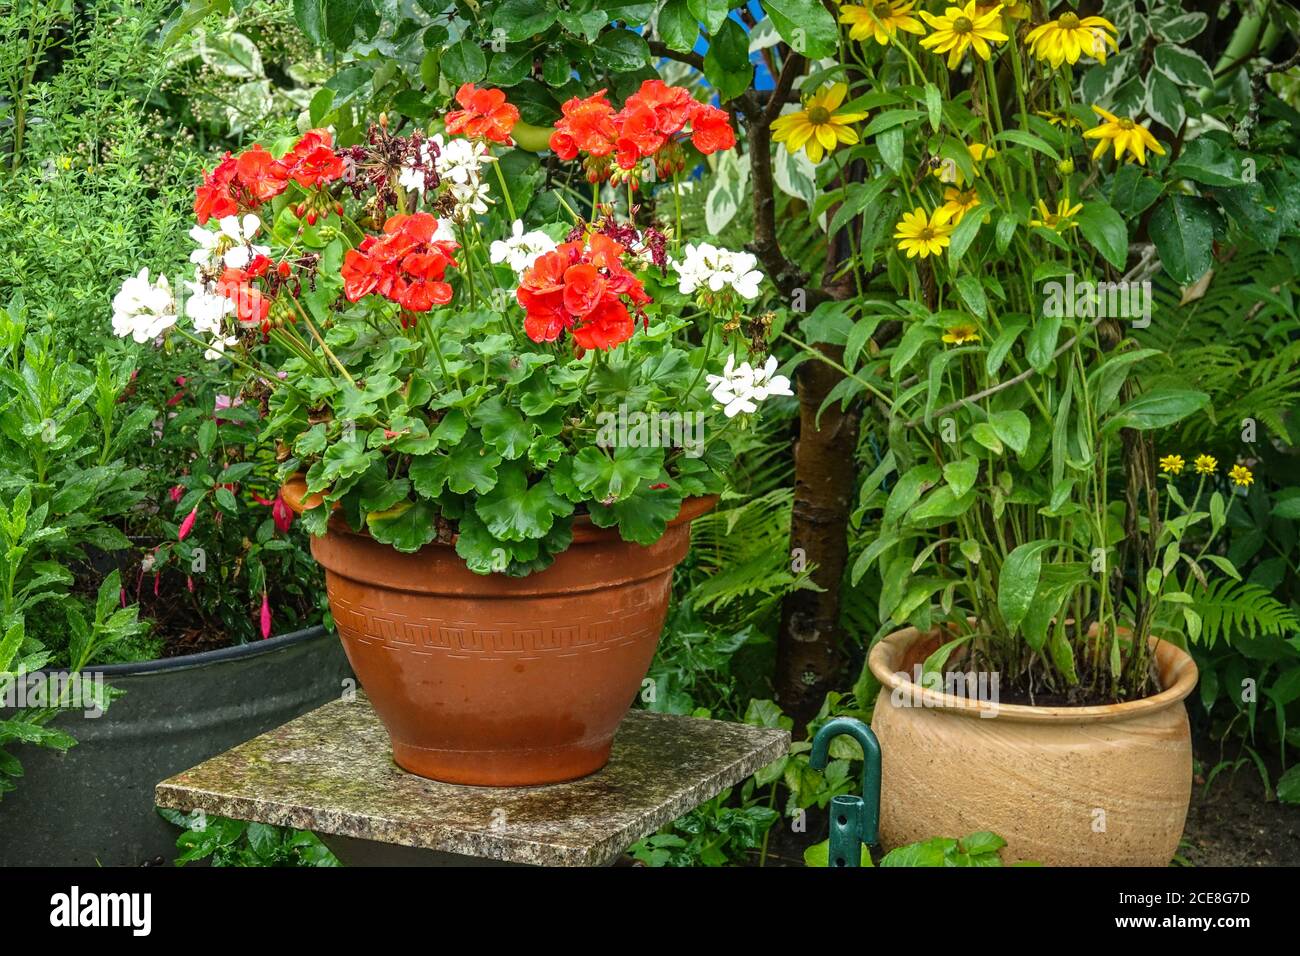 Jardín de flores de agosto Plantas de floración de verano en macetas Pelargonios floreciente en macetas de cerámica Falso girasol Heliopsis helianthoides Foto de stock